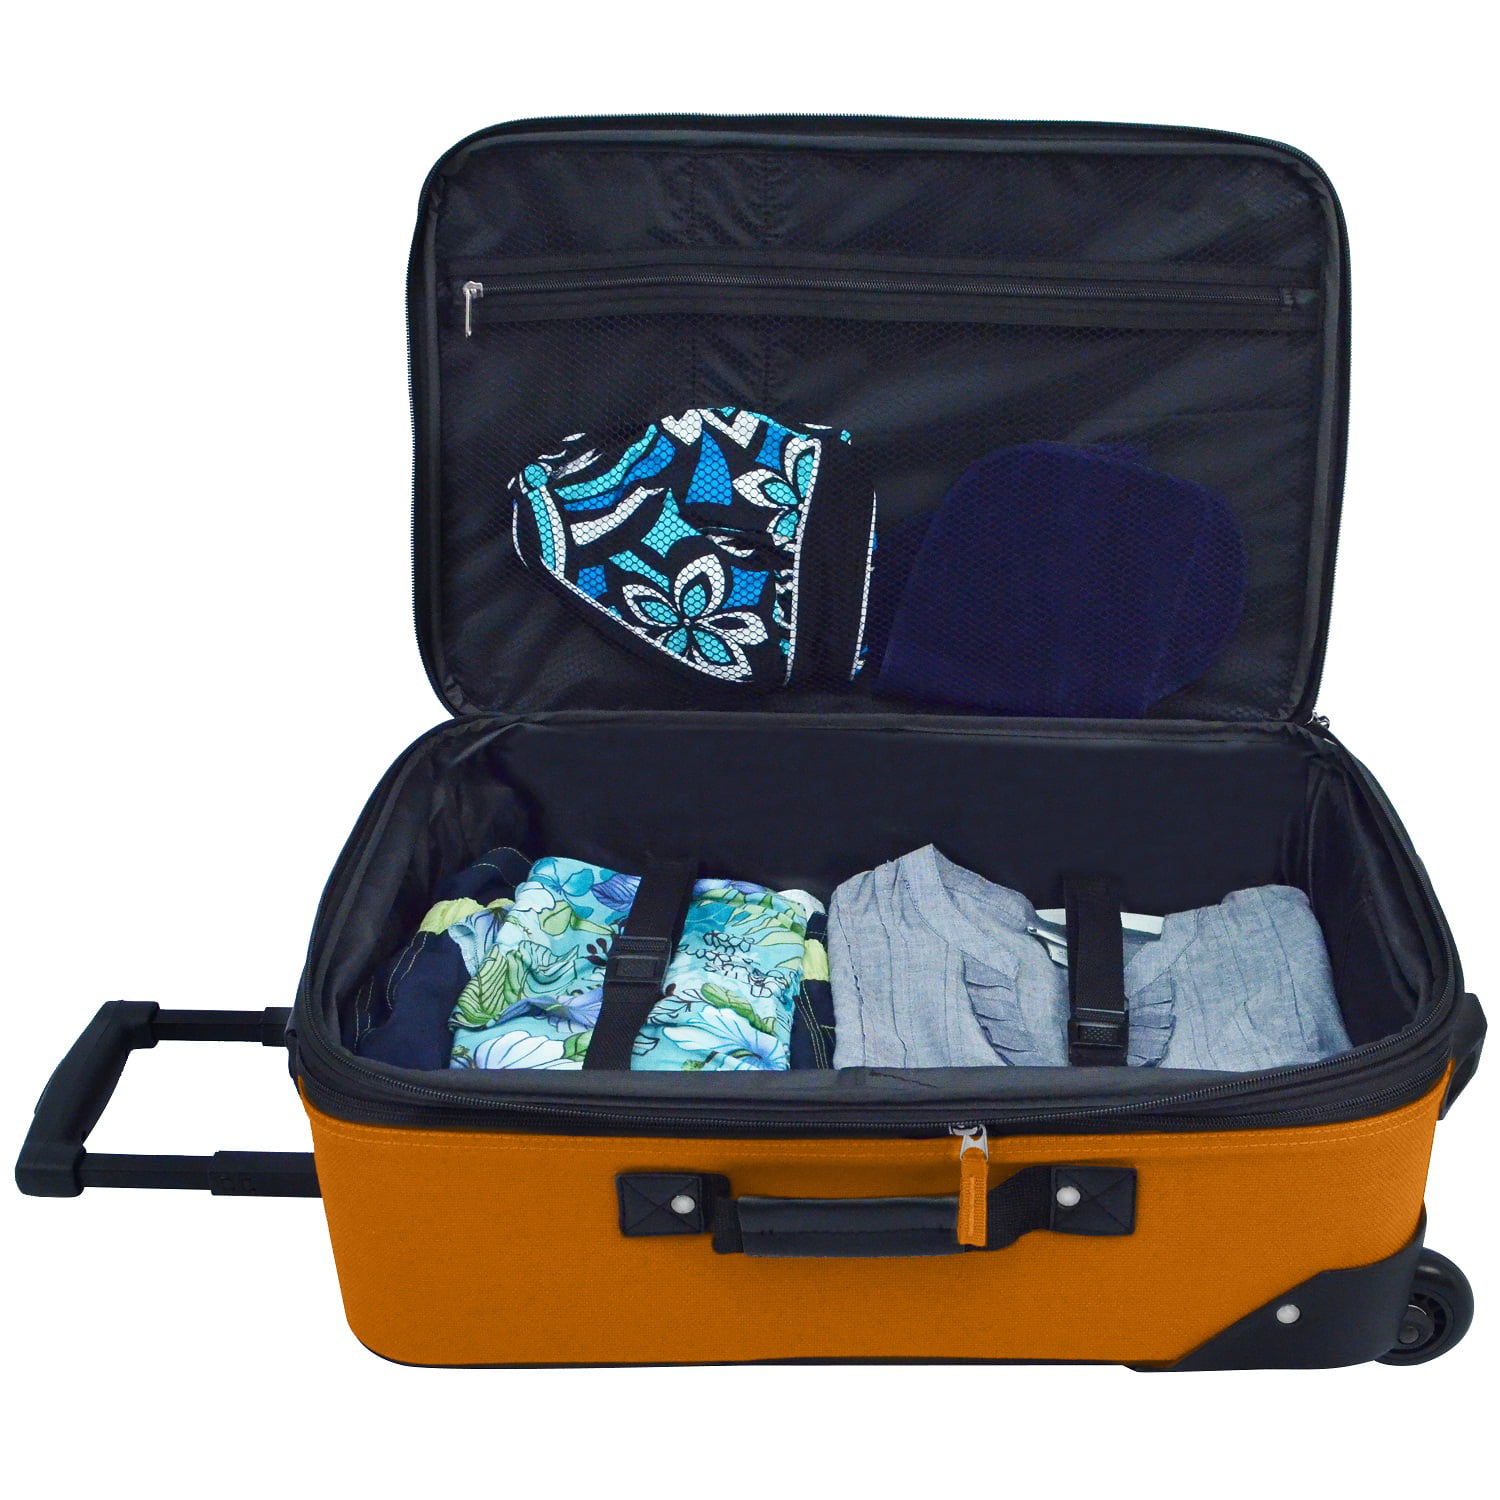 Ensemble de valises à roulettes légères et extensibles U.S Traveler Rio  (38,1 cm et 53,3 cm), vert, Valise cabine extensible en tissu Rio :  : Mode